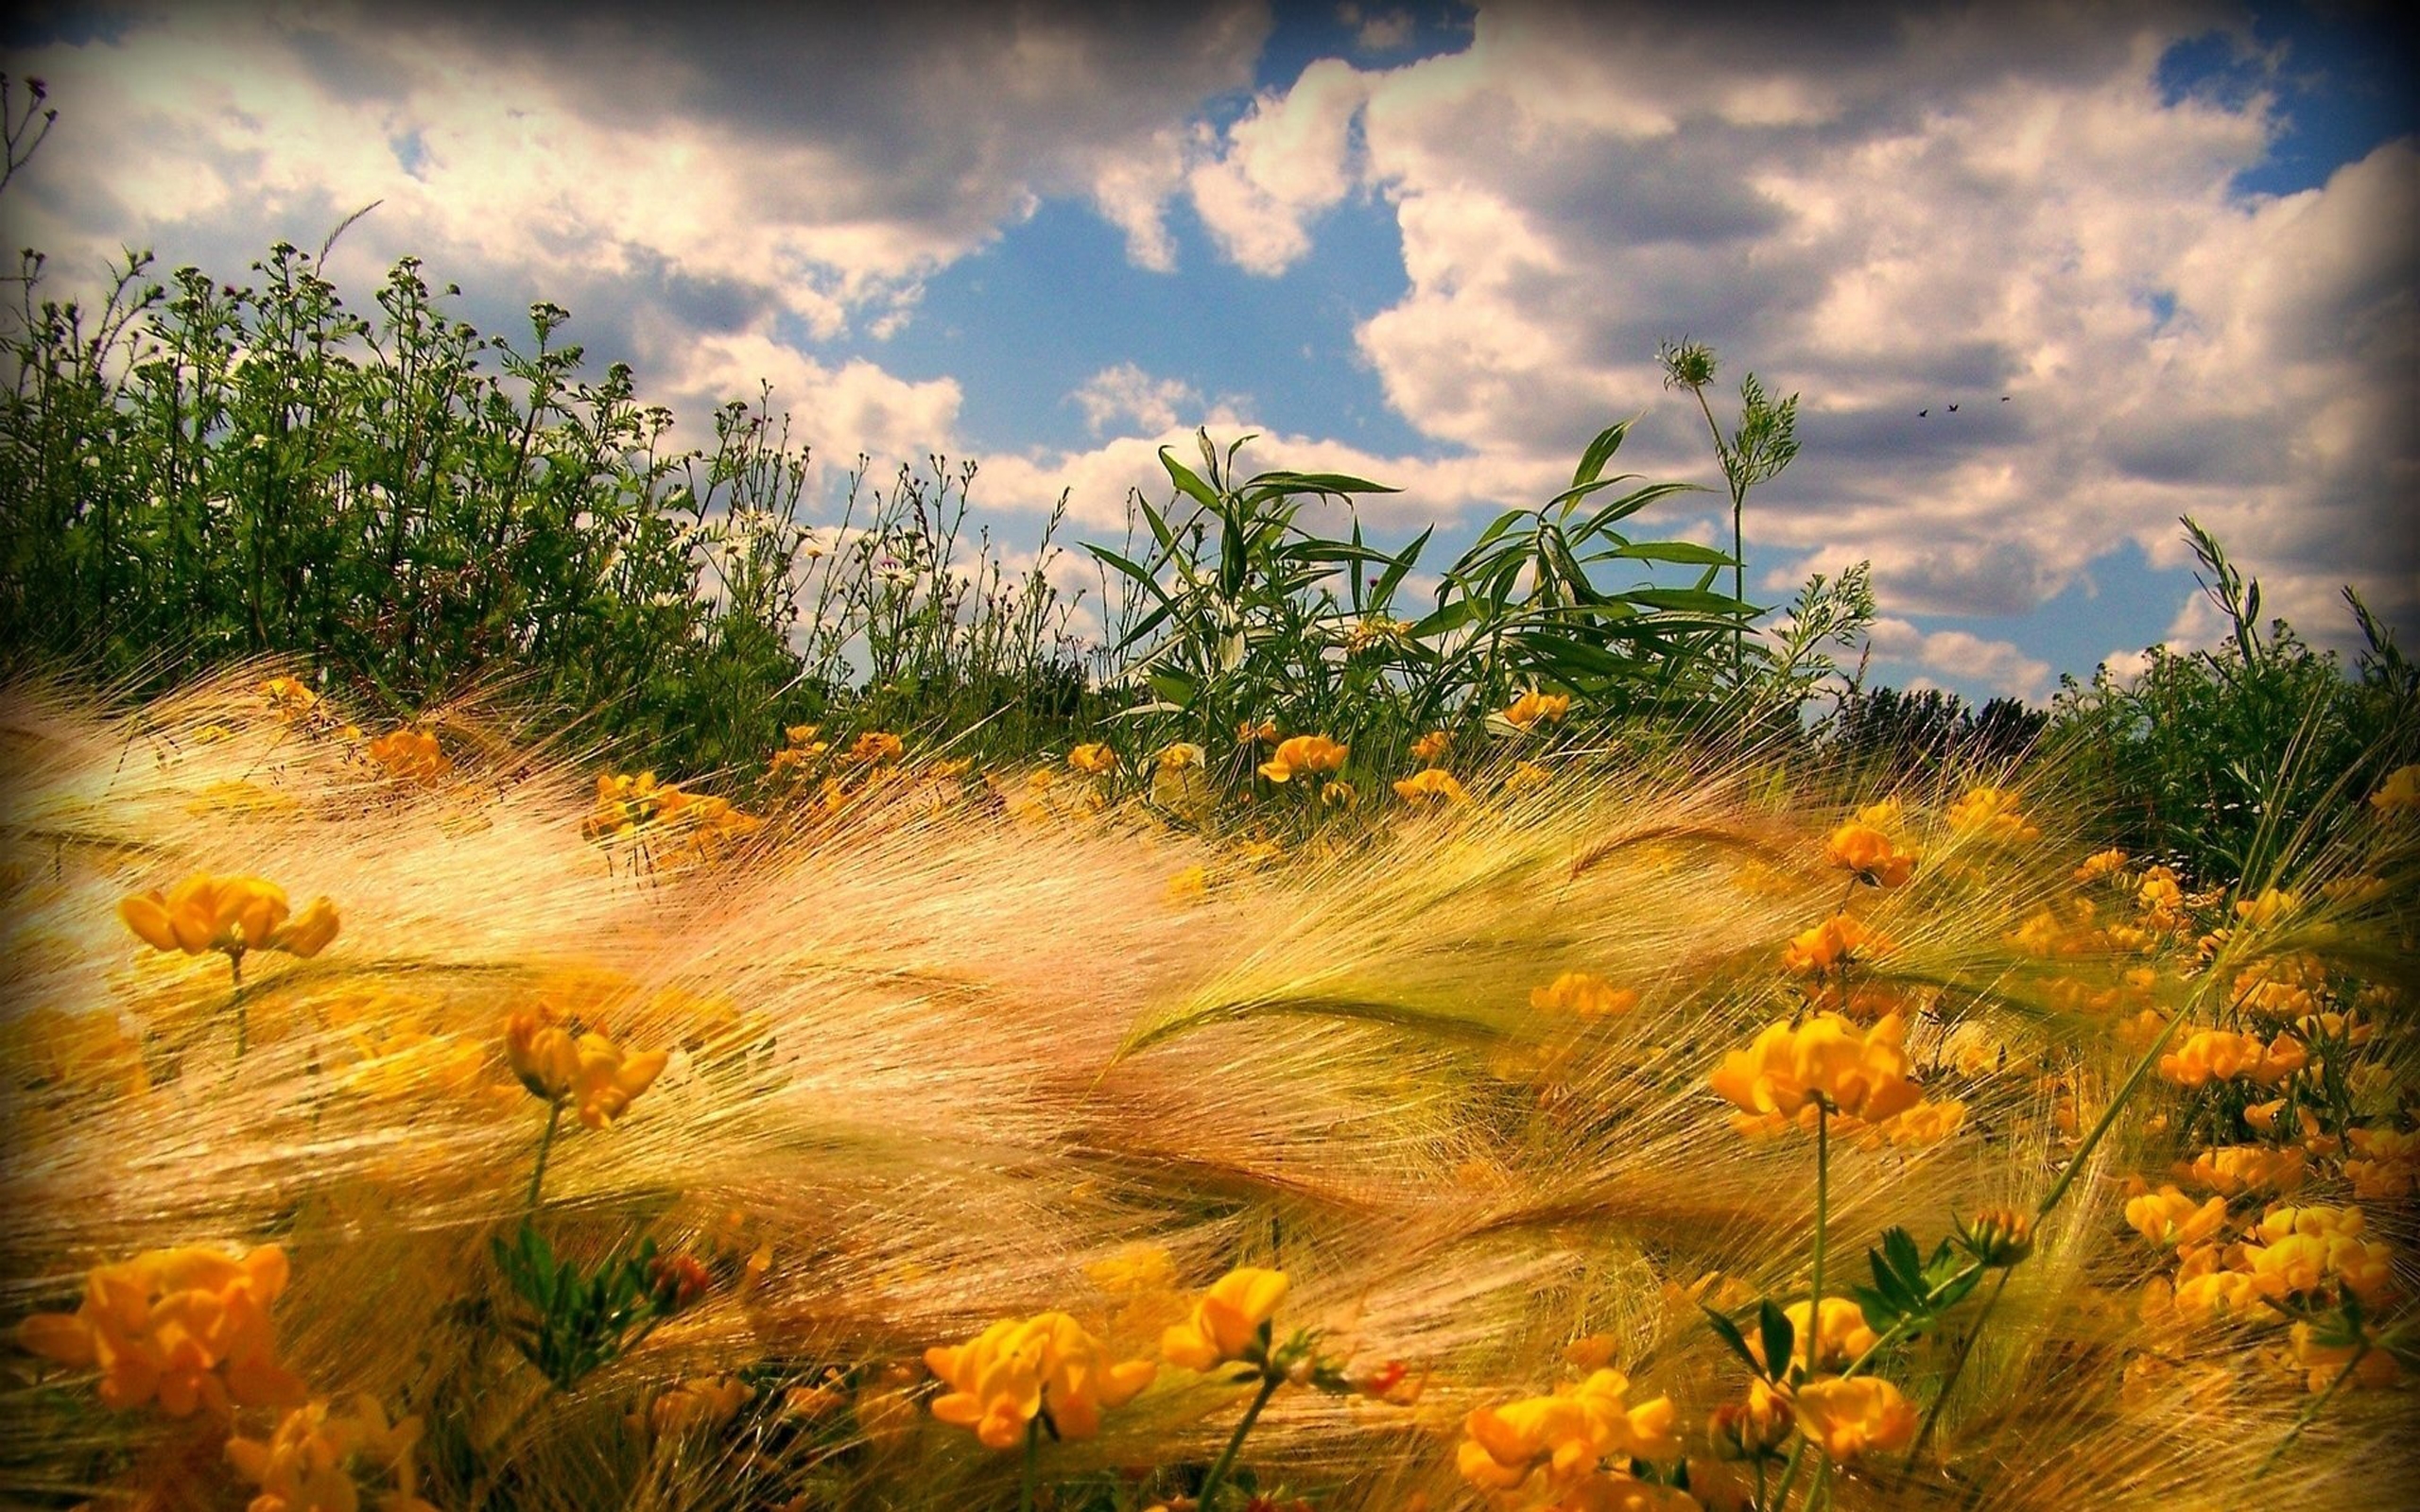 Легкий ветерок едва колышет прибрежные кусты. Поле с желтыми цветами. Август пейзаж. Яркая природа. Красивое поле.